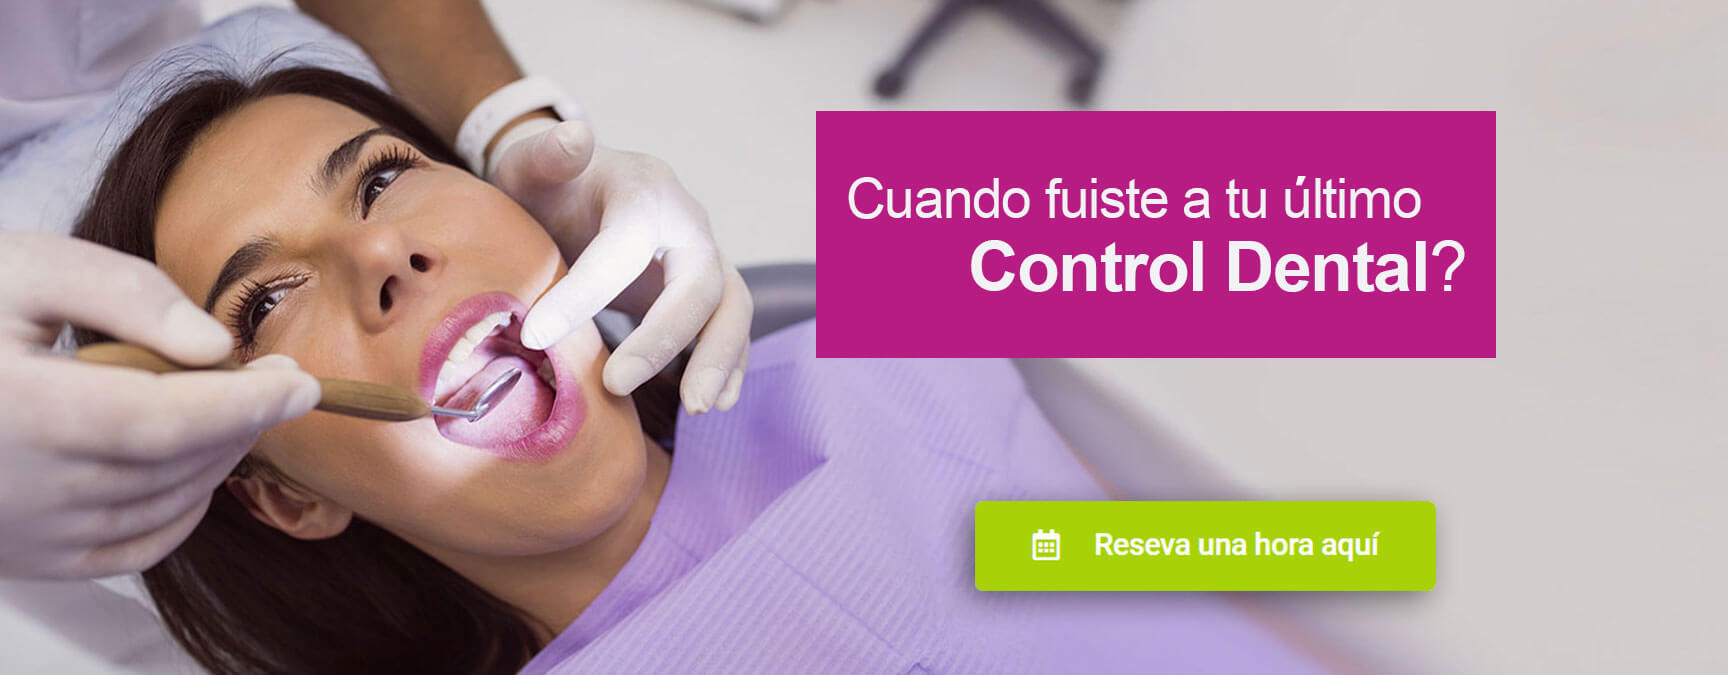 Control Dental